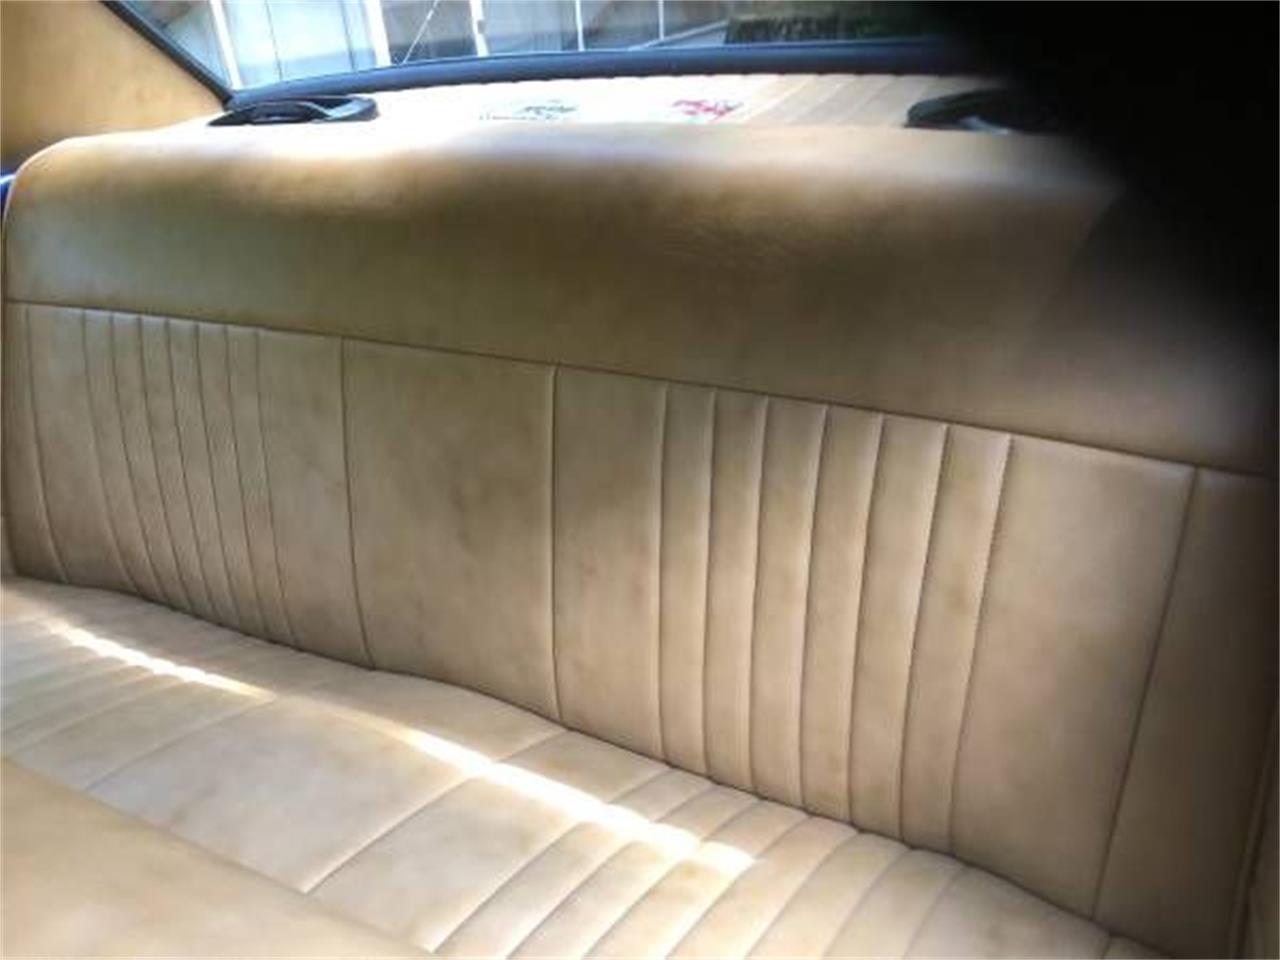 1968 Ford Falcon for sale in Cadillac, MI – photo 8